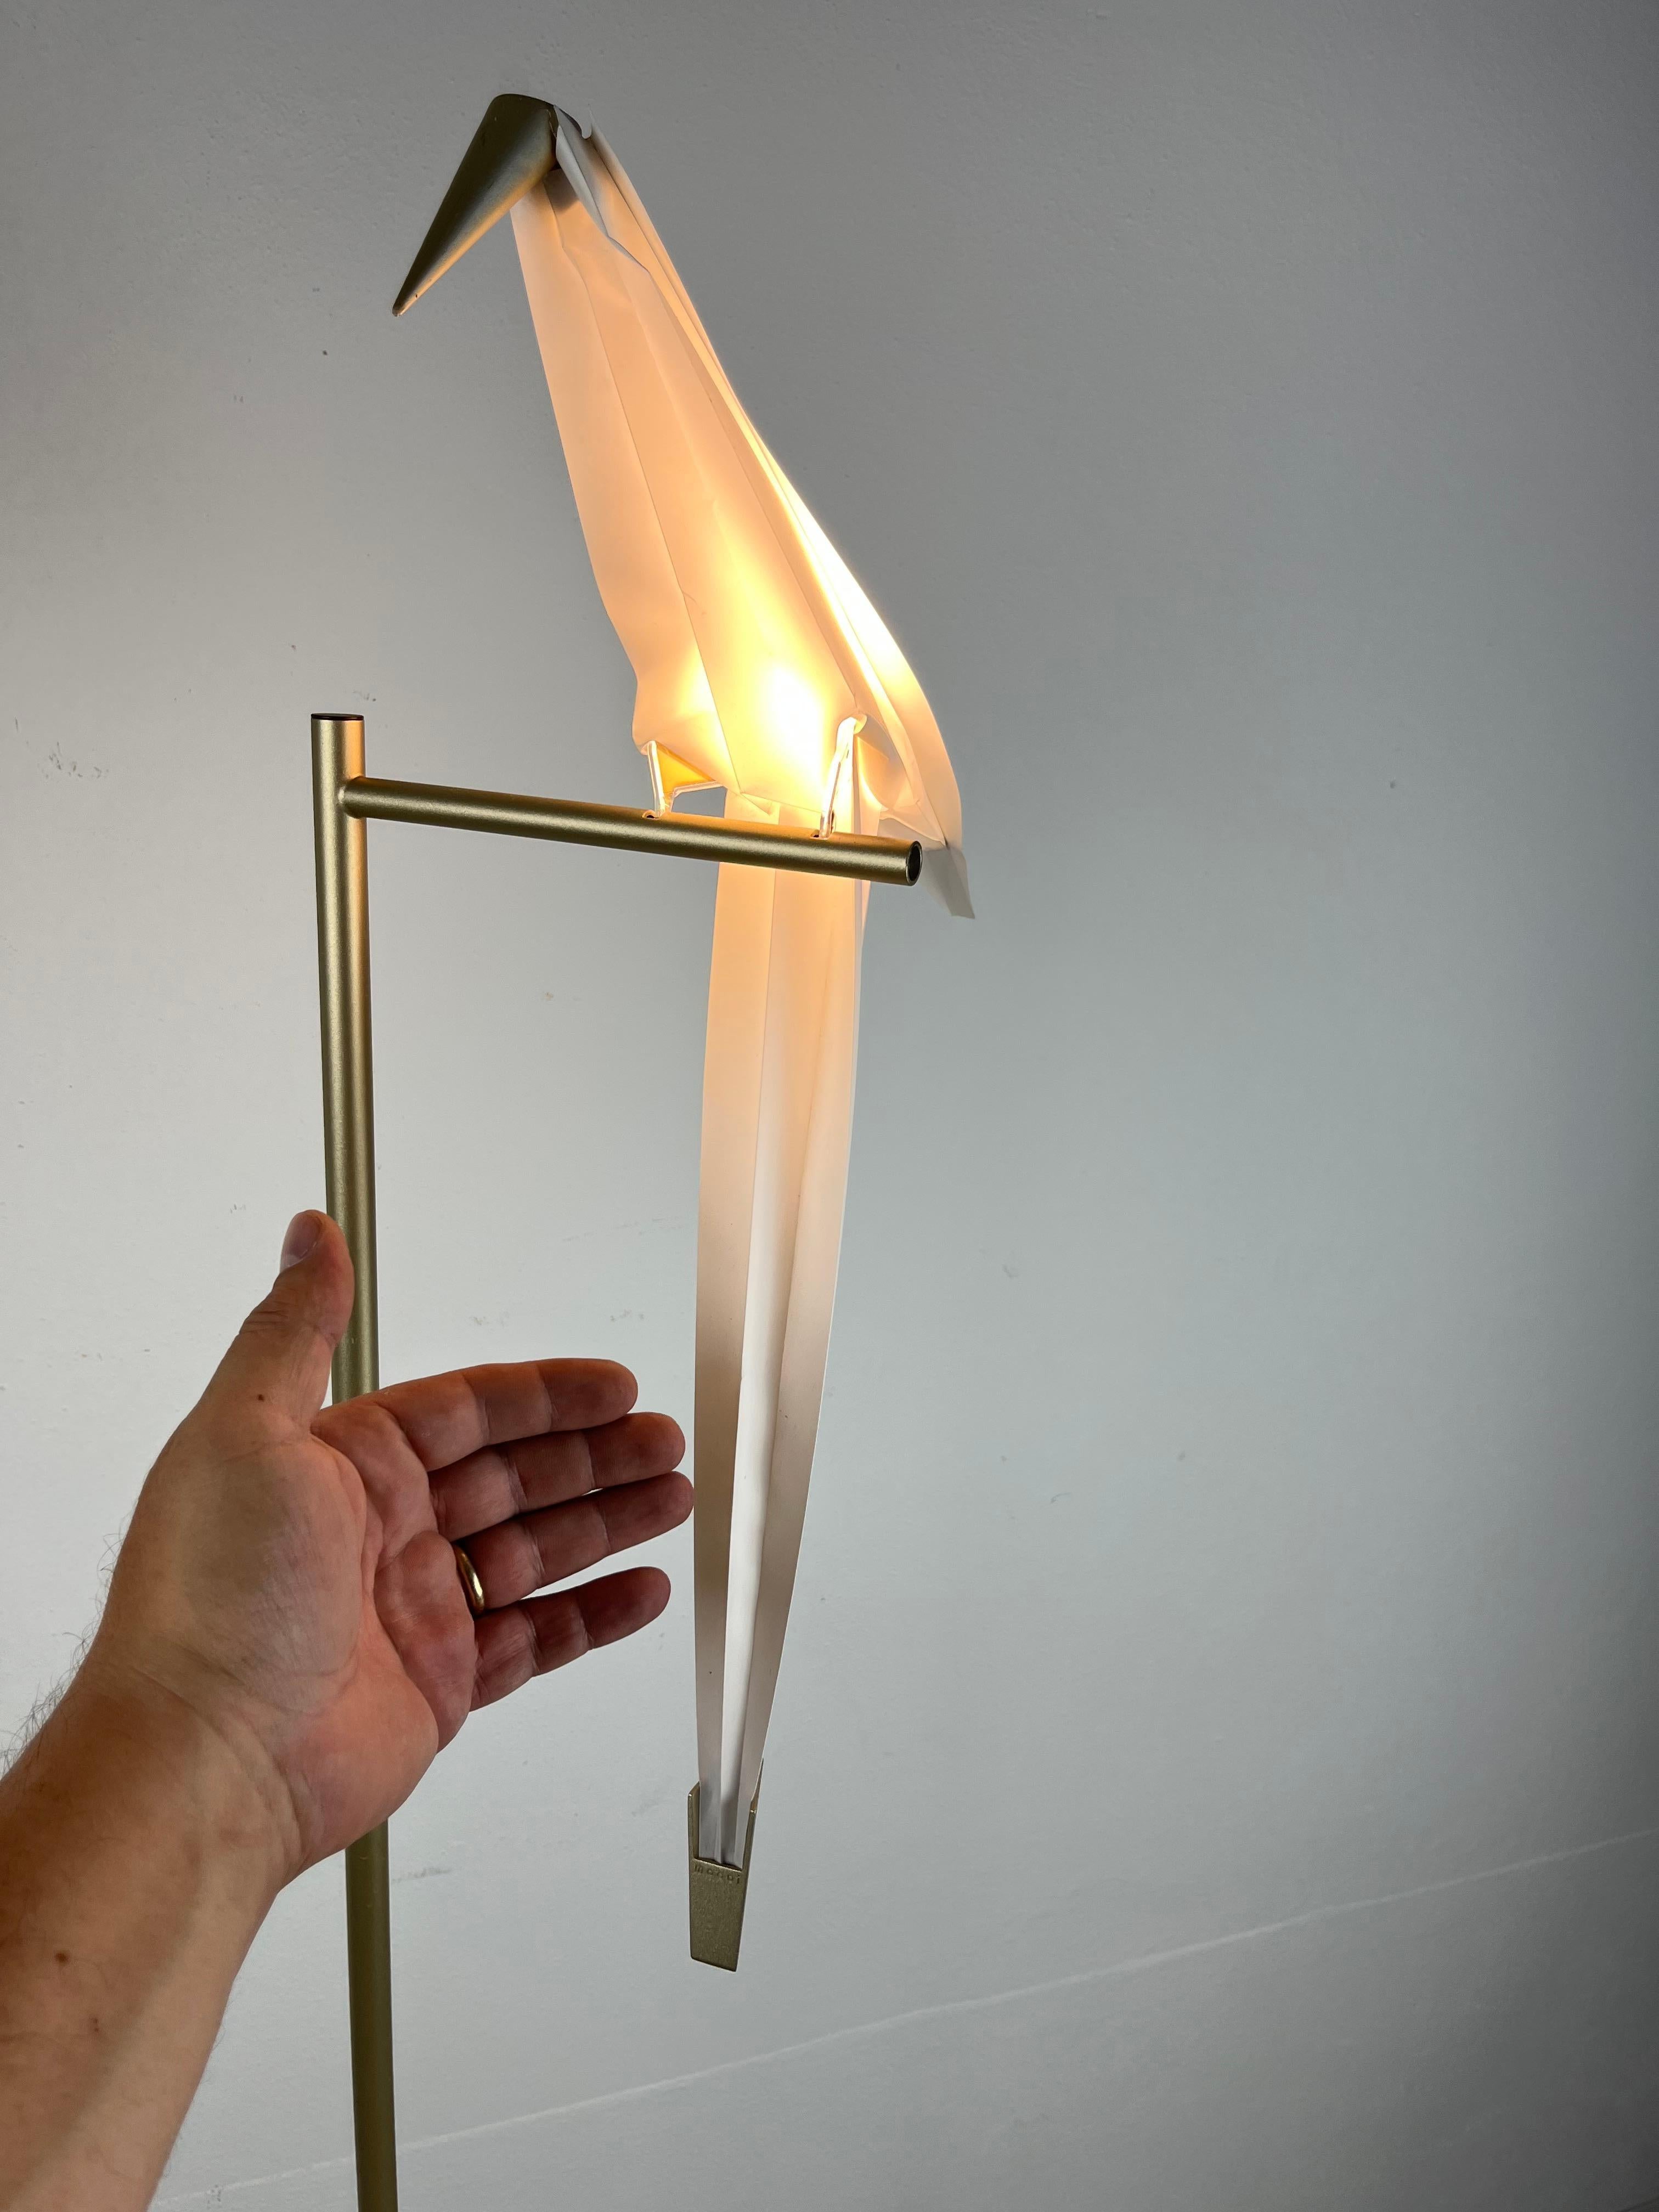 Aluminium Moooi Perch Light Bird Led  Lampadaire d'Umut Yamac, Pays-Bas, 2017